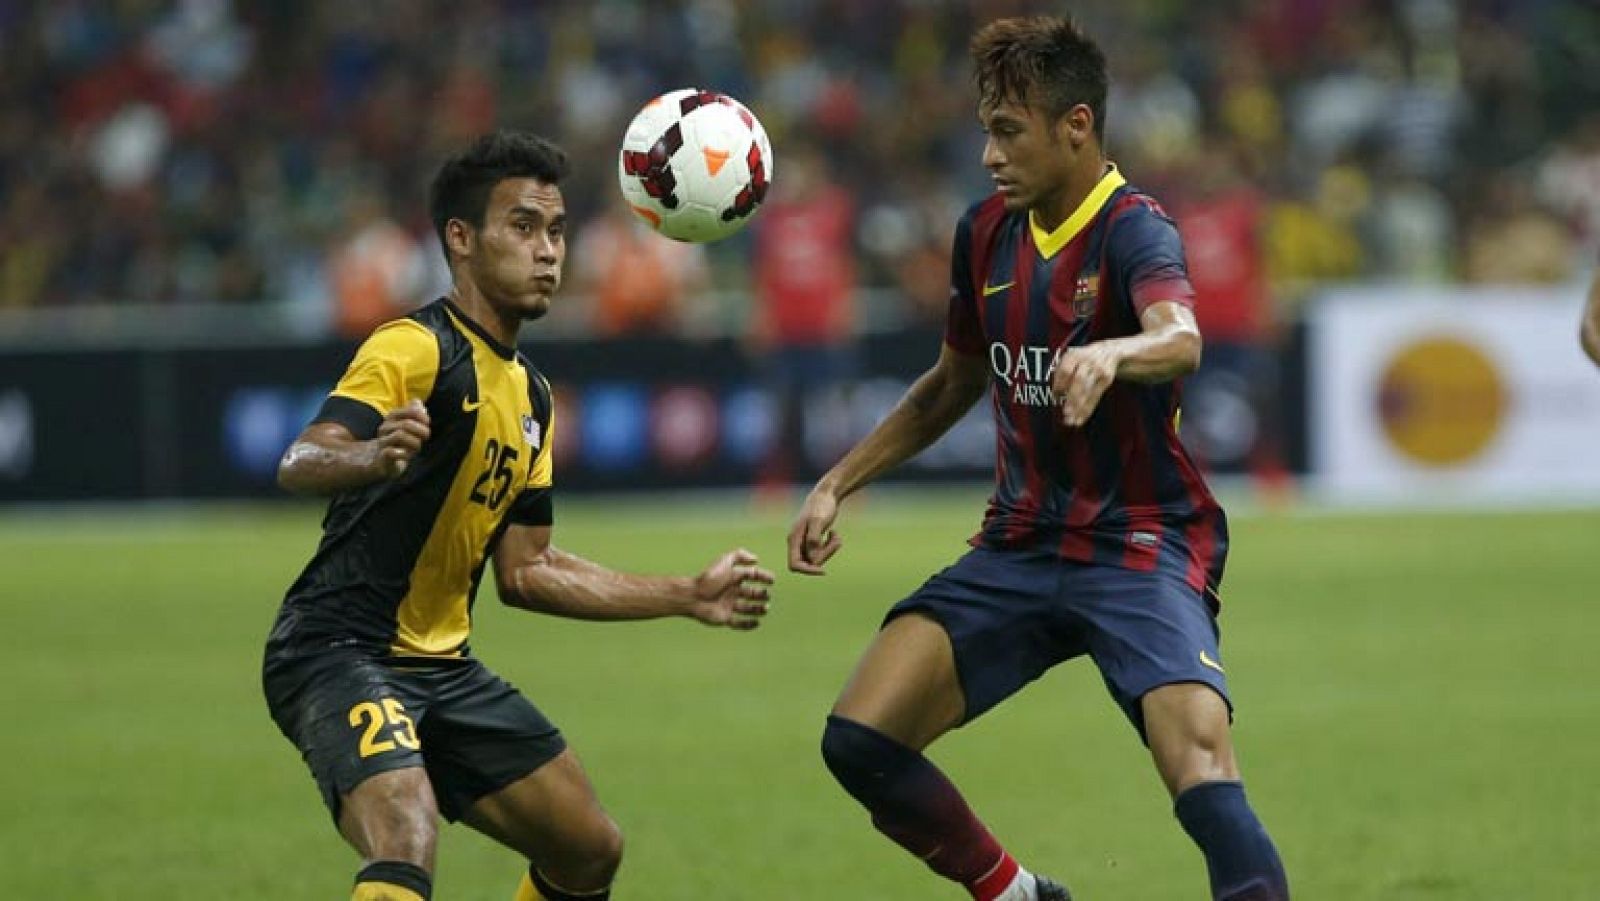 El Barcelona despidió la gira asiática con una victoria sin brillo en Kuala Lumpur, ante el Malaysia XI (1-3), un esforzado combinado de jugadores de la Liga malasia que incomodó al conjunto azulgrana en algunas fases del partido, especialmente en la